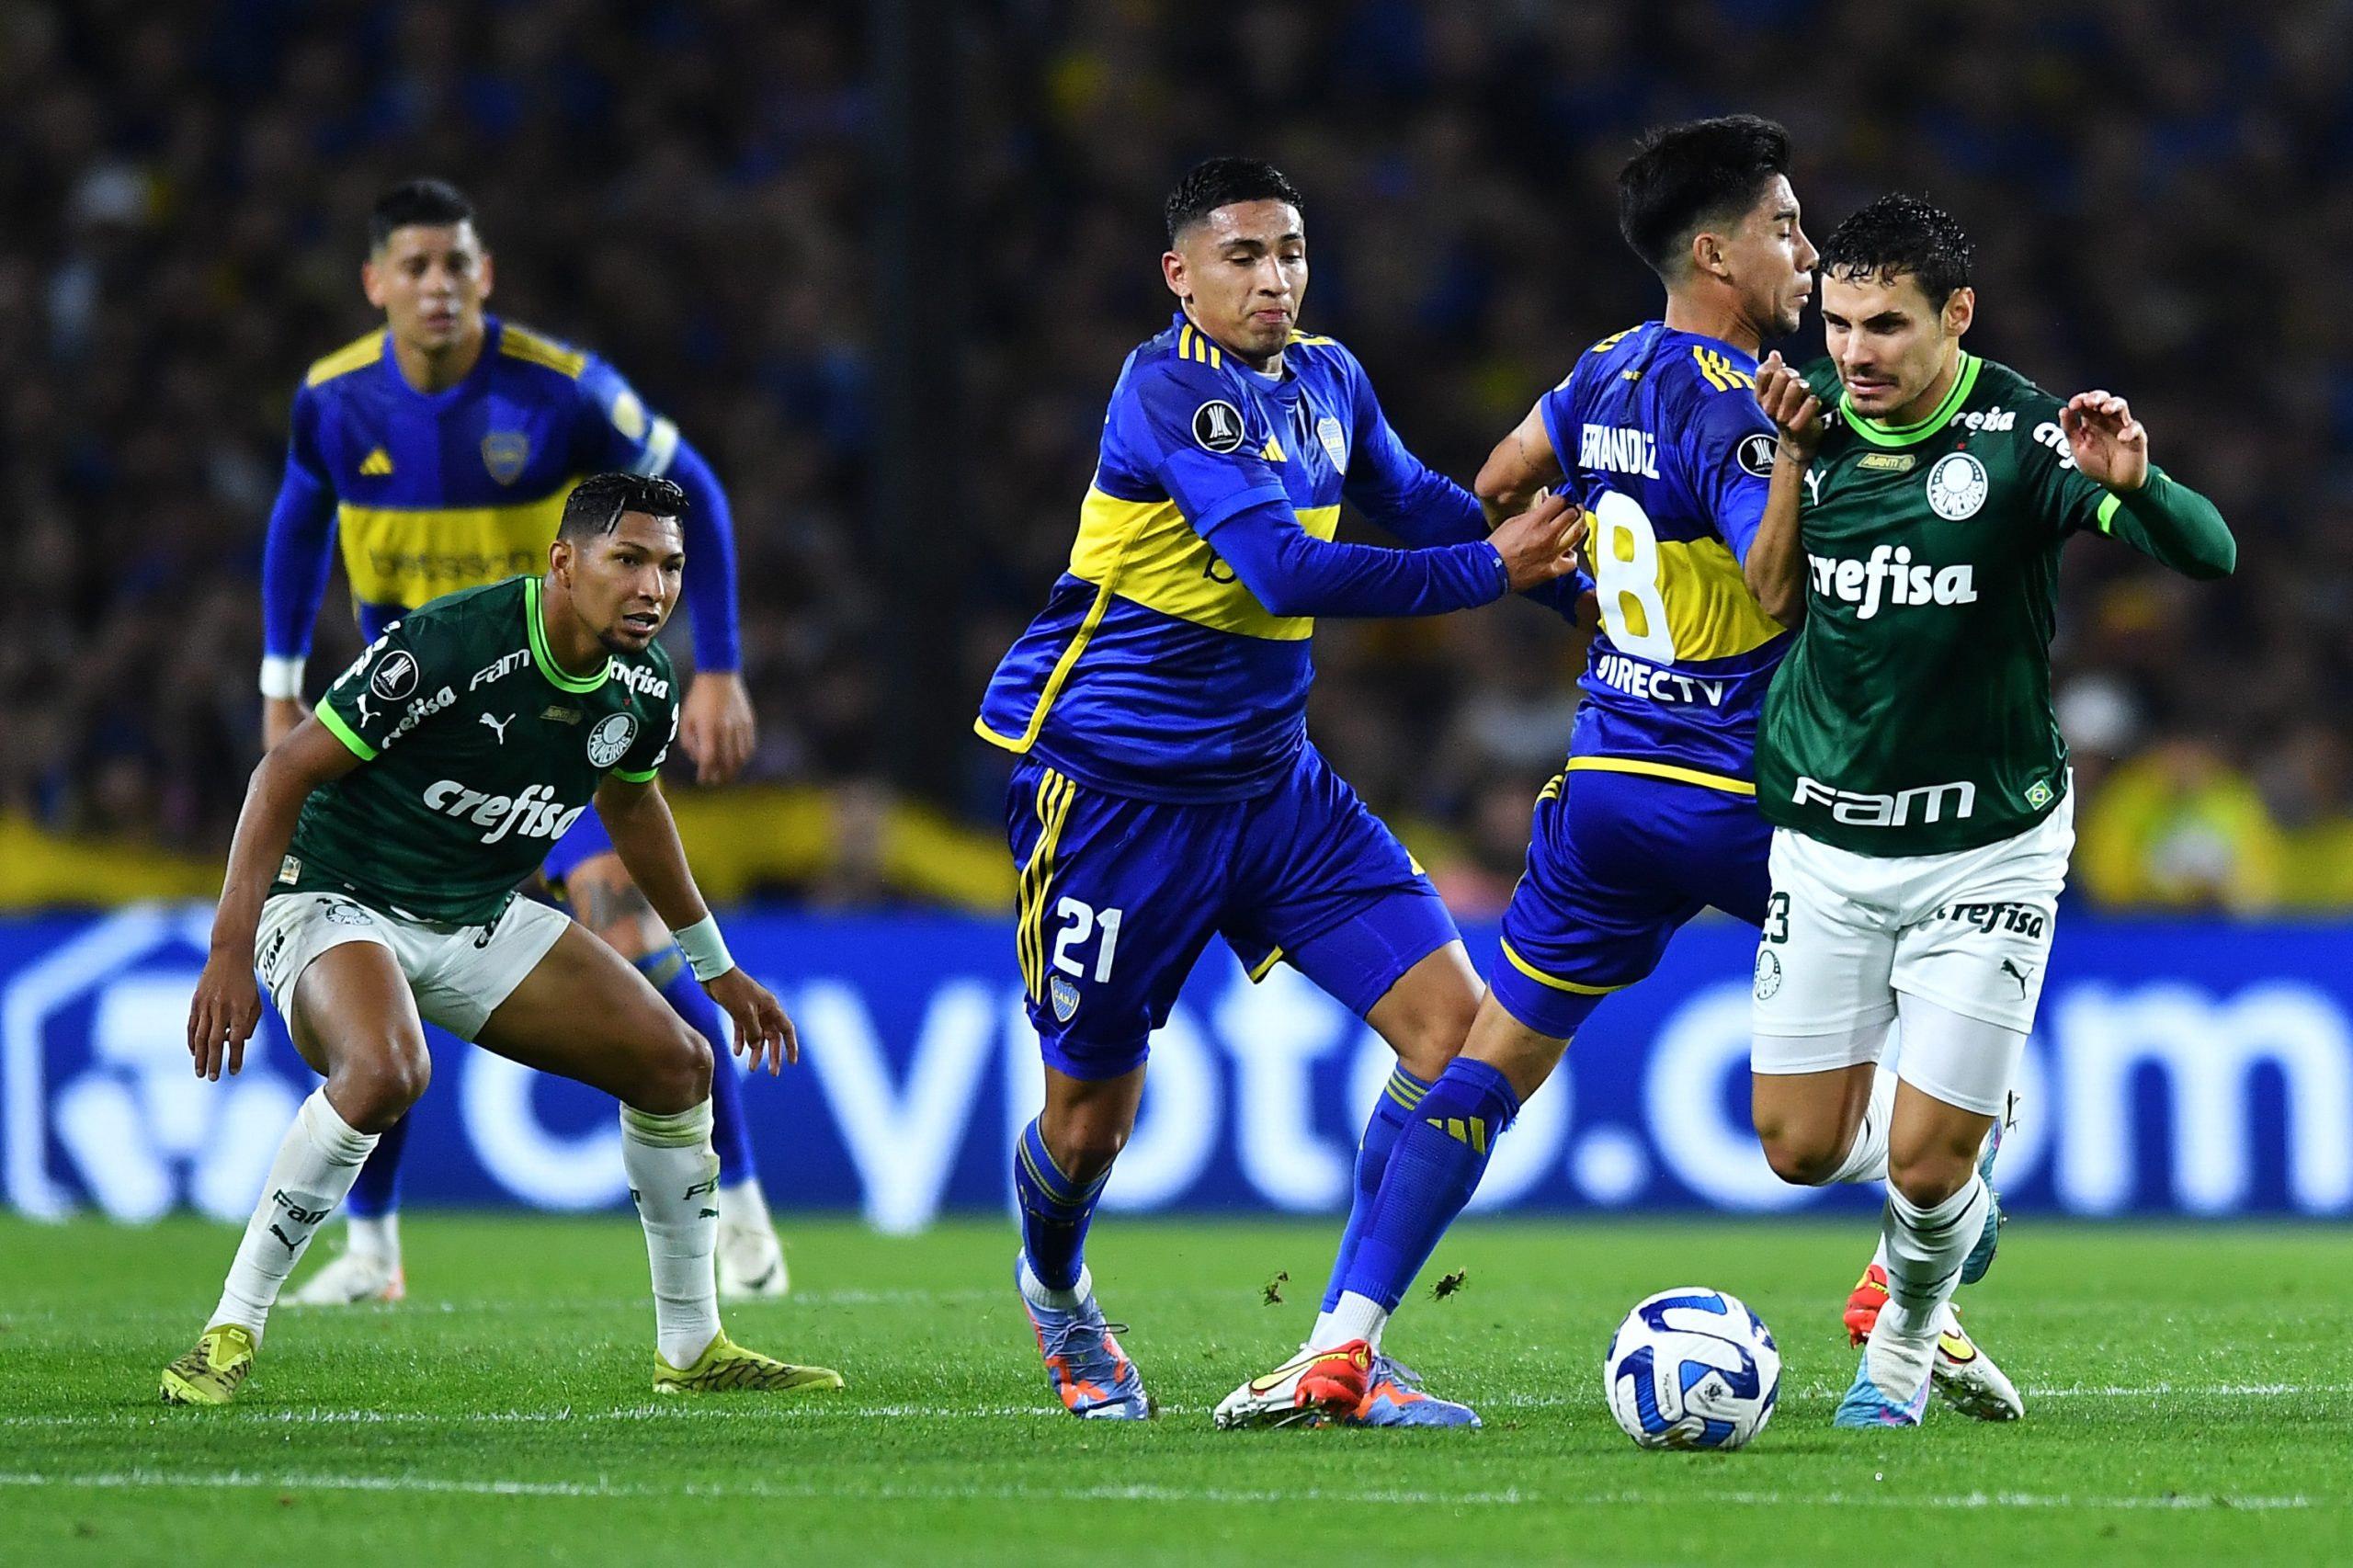 Carlos Miguel provoca o Palmeiras durante férias: Não tem Mundial